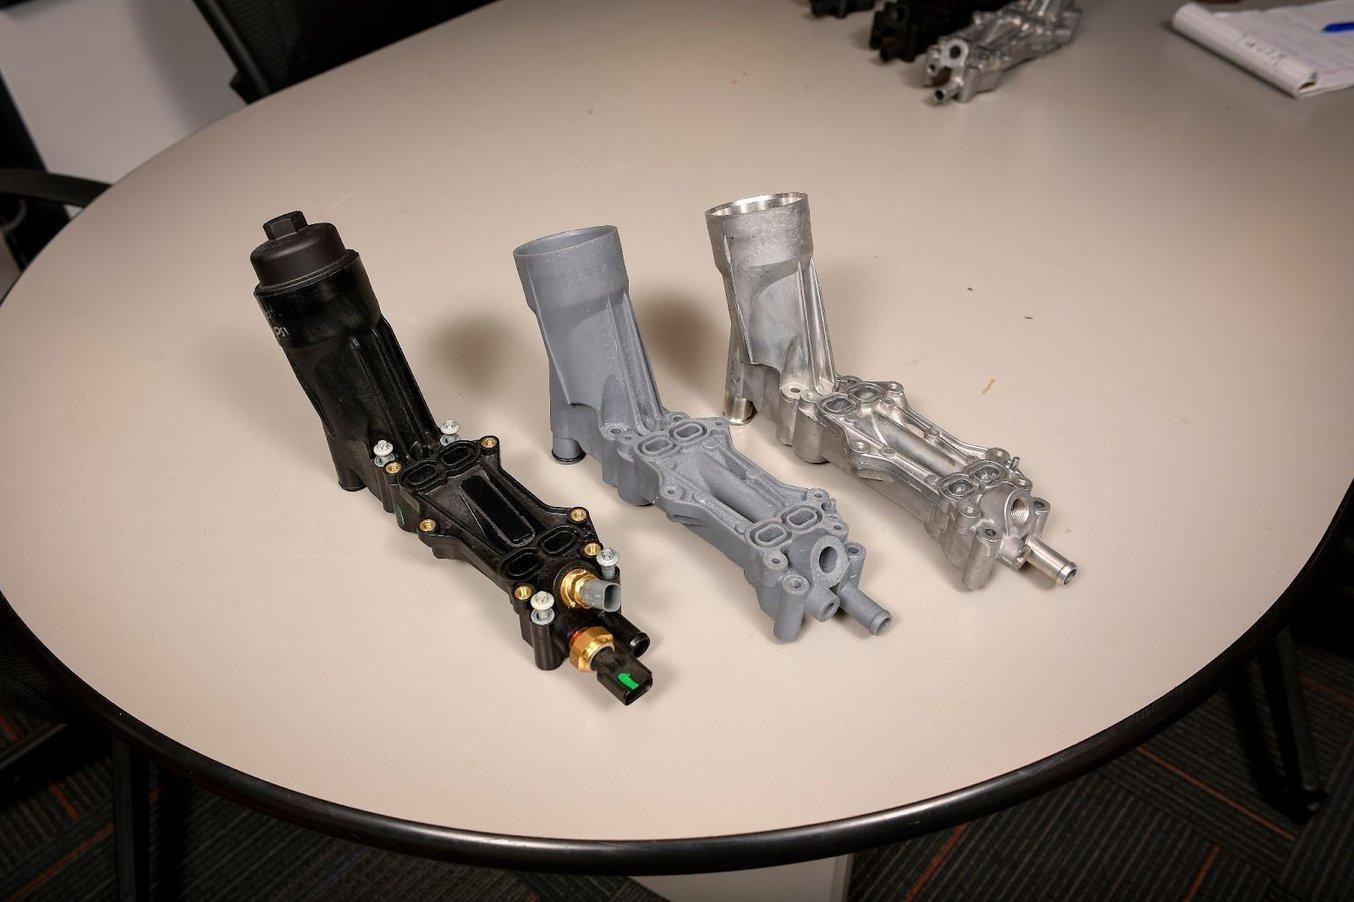 Dorman Products arbeitet mit den SLA-3D-Druckern von Formlabs, um die Prototypen der Aftermarket-Produkte herzustellen.